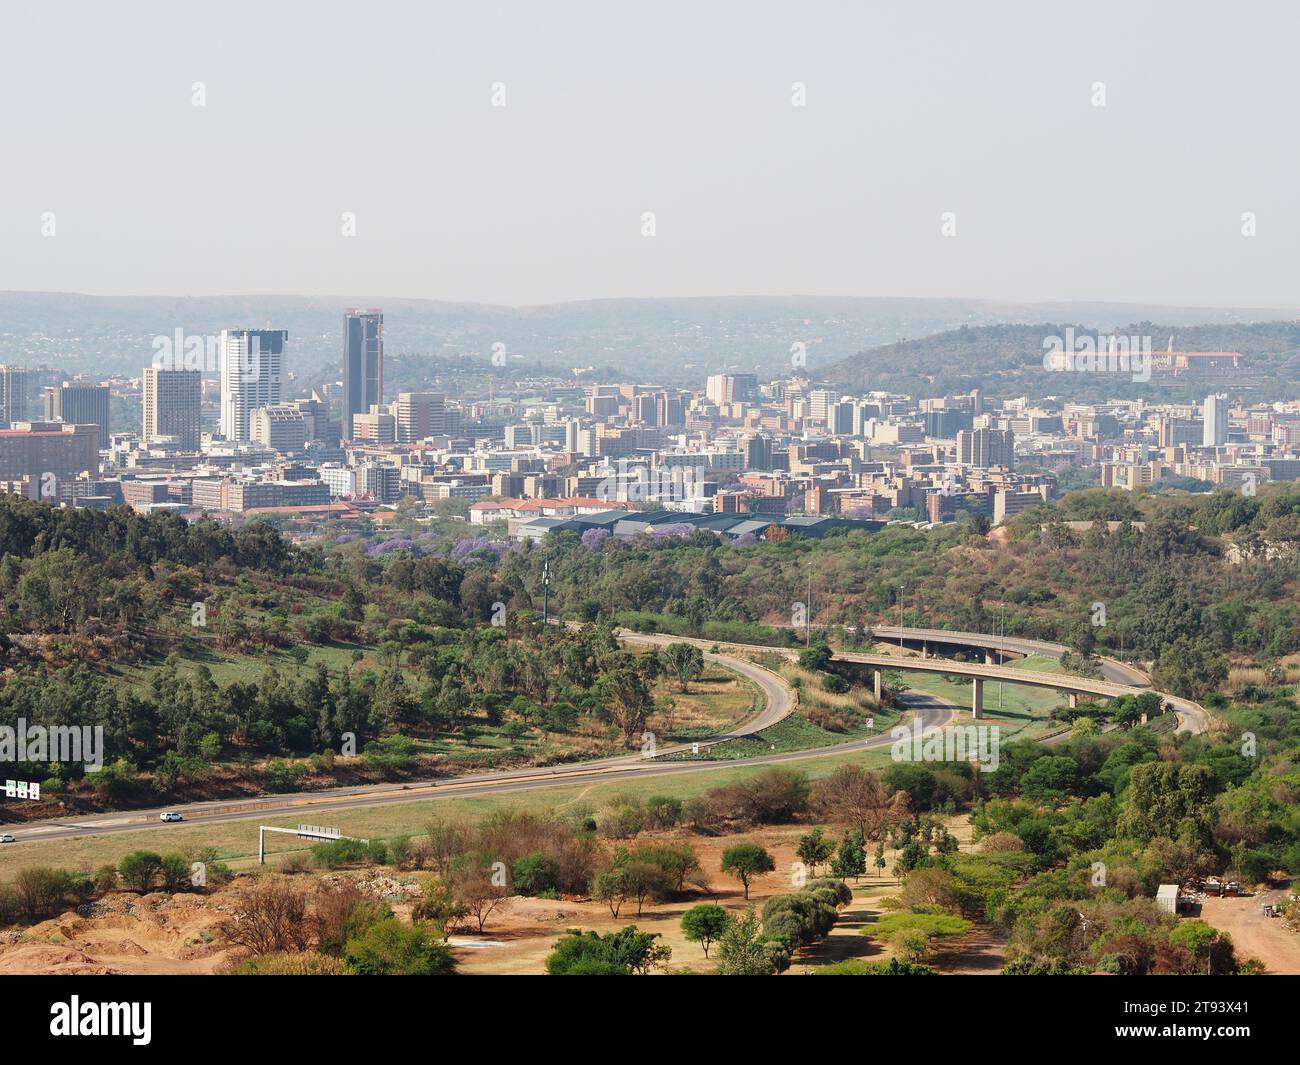 La ville de Pretoria vue de loin avec les autoroutes et la nature au premier plan. Pretoria, Gauteng, Afrique du Sud. Banque D'Images